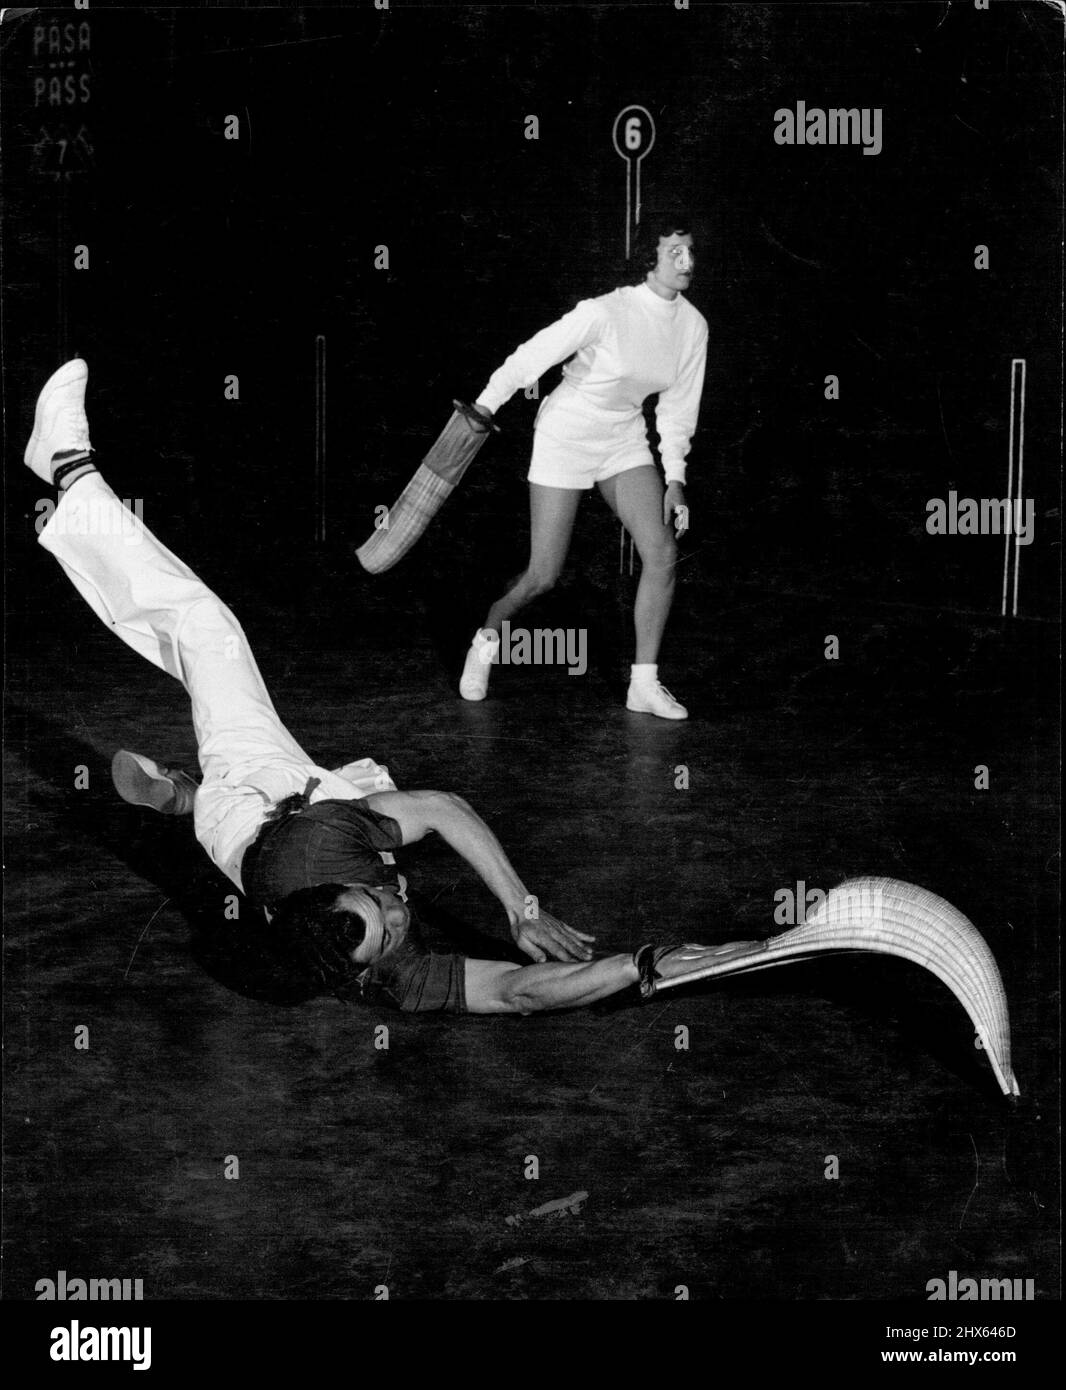 Girl 'Jai-Alai' Spieler (9): Du musst nicht nur Wände klettern, sondern auch manchmal auf dem Boden kraxeln, wenn du Jai-Alai spielst. Dieser Action-Schuss hat den Profispieler Tiburcio Celaya erwischt, der auf dem Boden abgetaucht ist, um einen Tiefschlag zu erhappen und eine Rückkehr zu machen. Alicia Weeks, im Hintergrund, wagt sich, Celayas Schuss zurückzugeben. 1. April 1954. (Foto von Ben & Sid Ross). Stockfoto